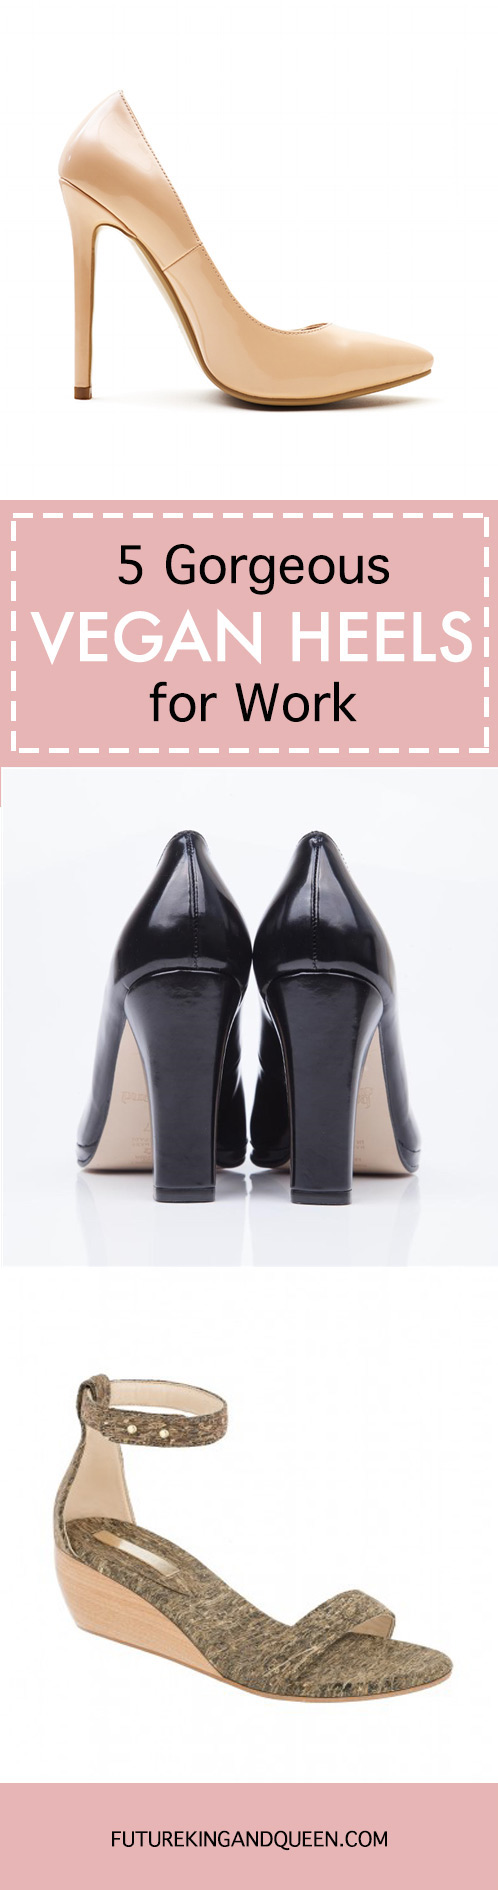 5 Gorgeous Vegan Women's Heels for Work 